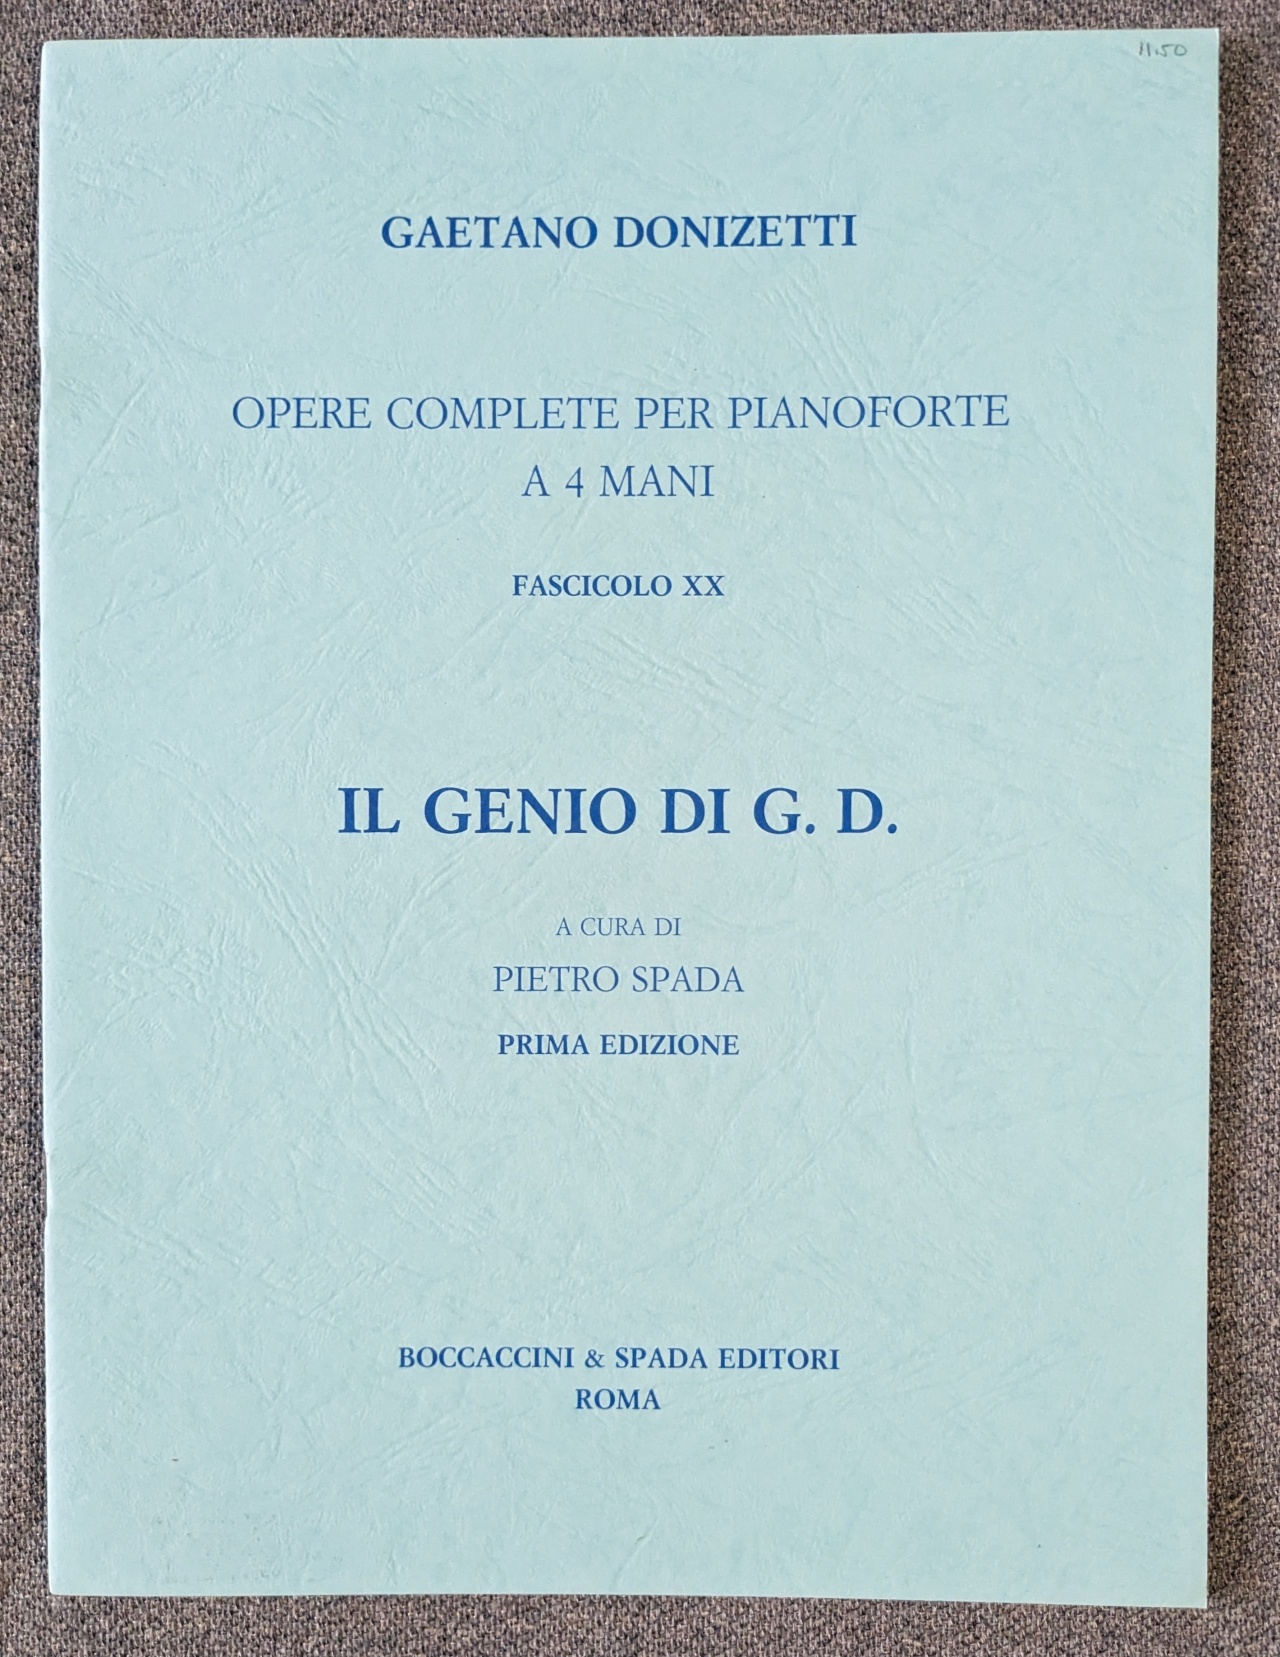 Gaetano Donizetti iL Genio (Genius) Di G.D. 4 Hands Pietro Spada - Click Image to Close